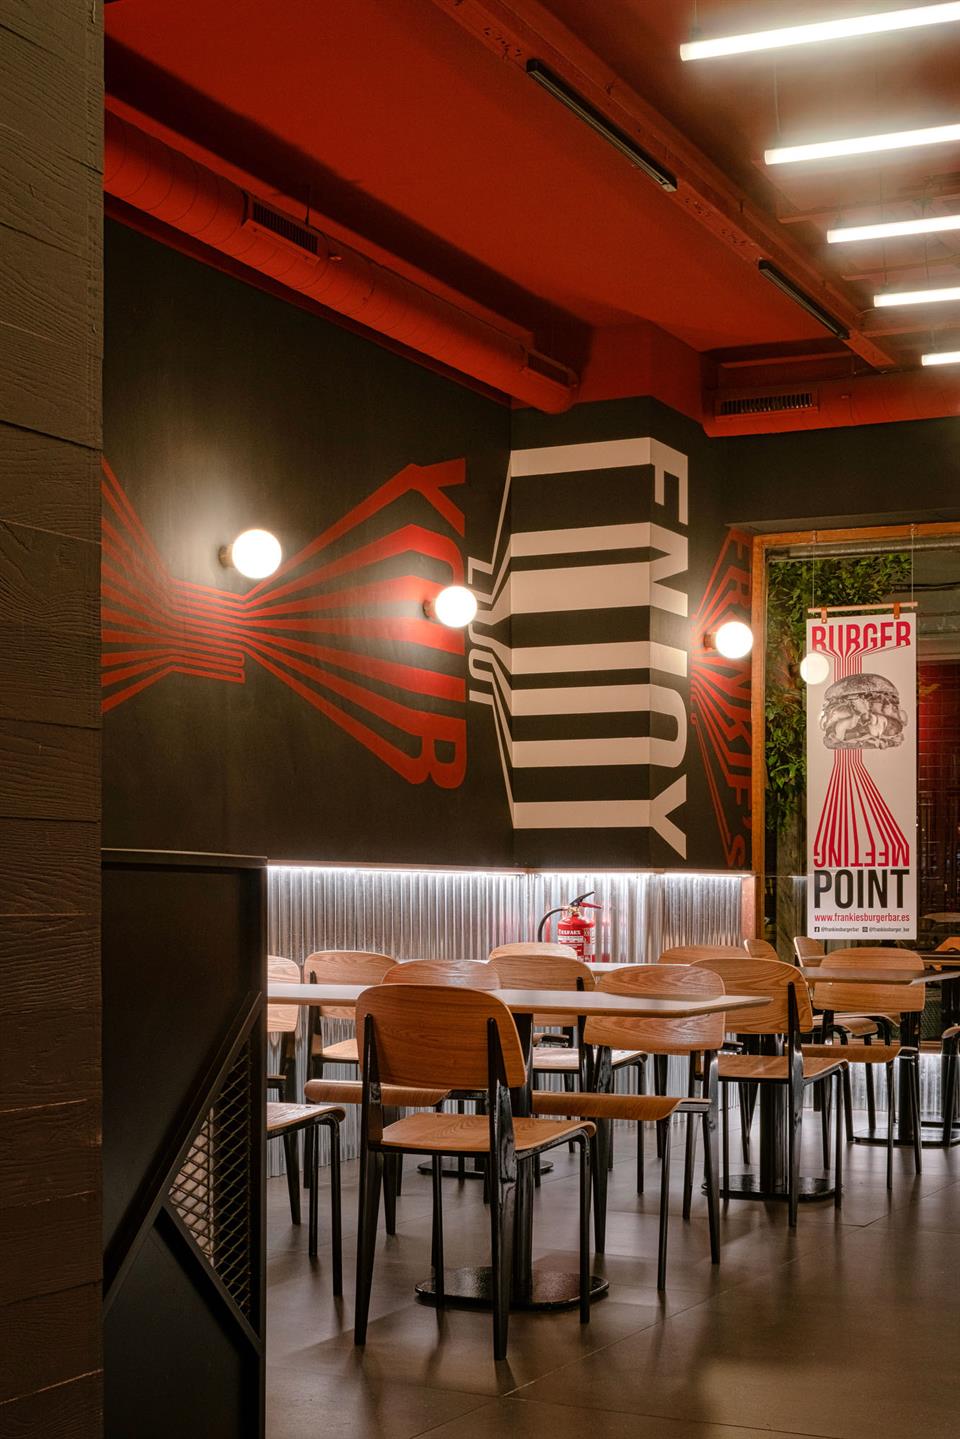 El restaurante Frankie's Burger Bar ha inaugurado en el centro de Valencia 14